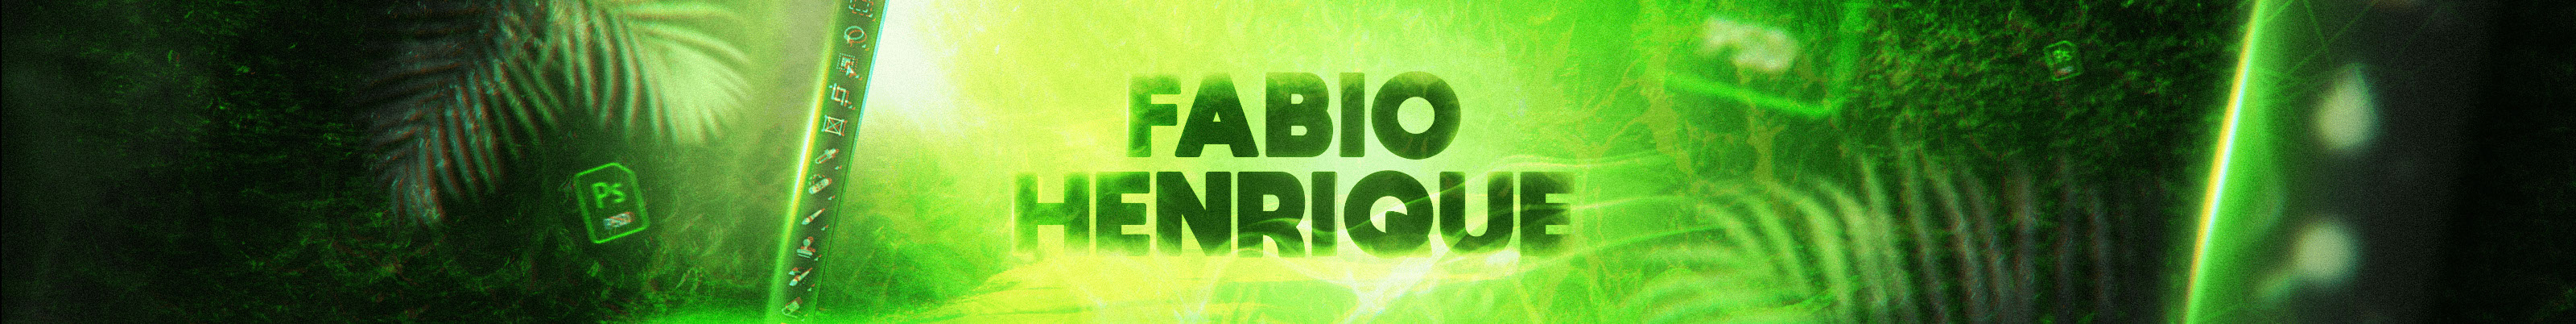 Fabio Henrique's profile banner